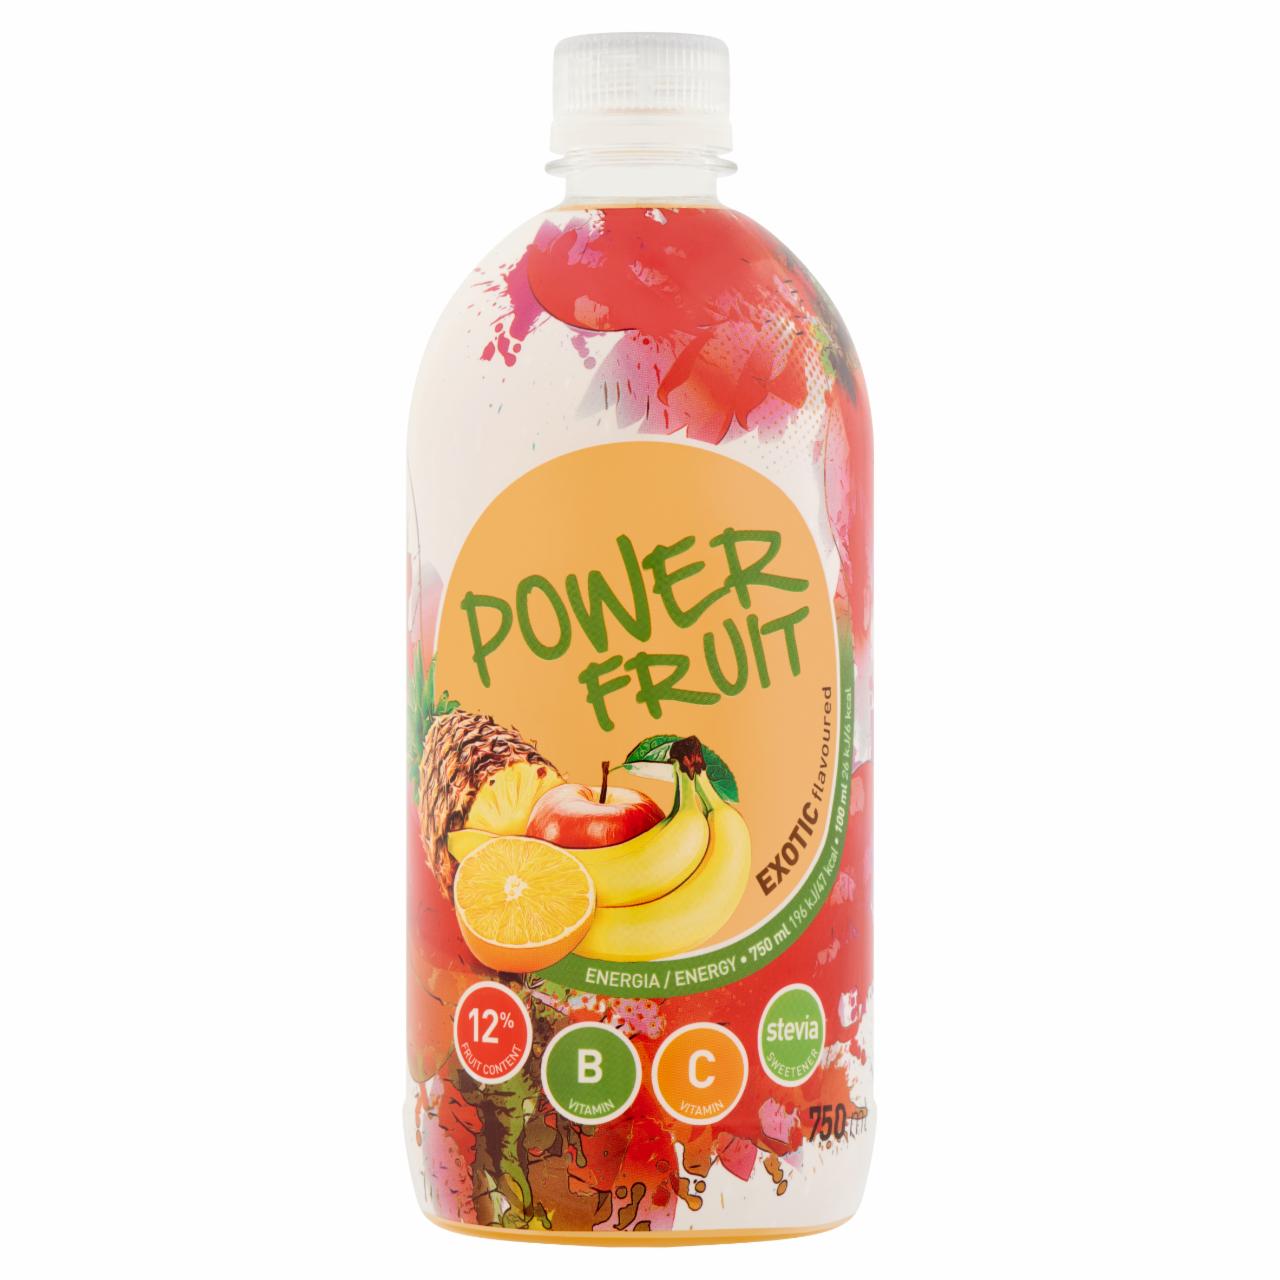 Képek - Power Fruit energiaszegény vegyesgyümölcs ital forrásvízzel, édesítőszerekkel 750 ml